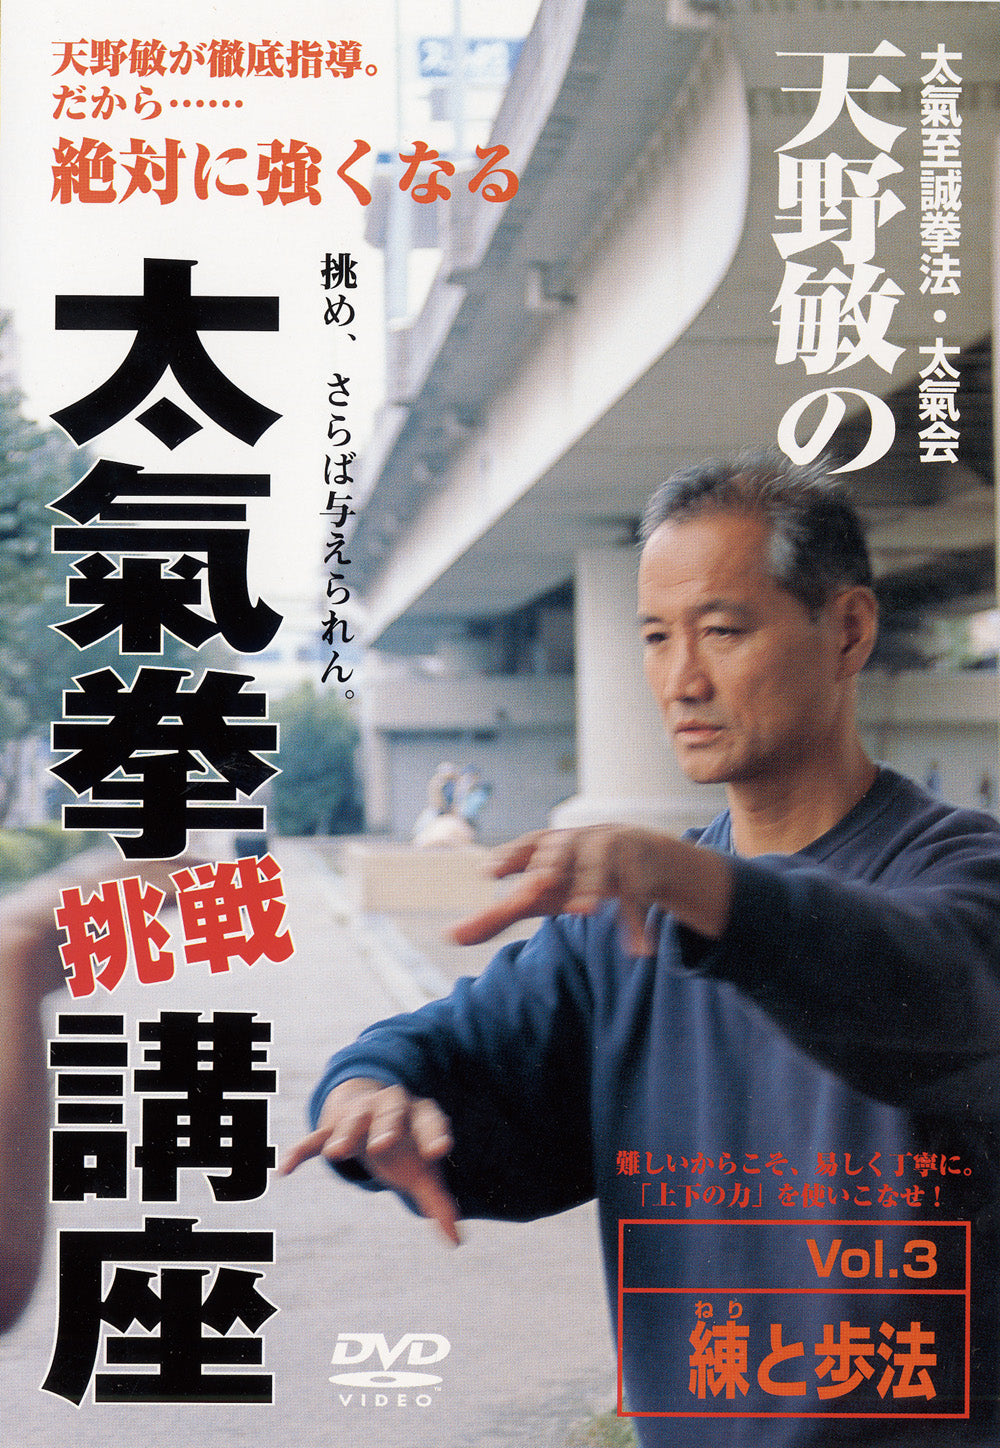 Taikiken Challenge DVD 3 by Satoshi Amano